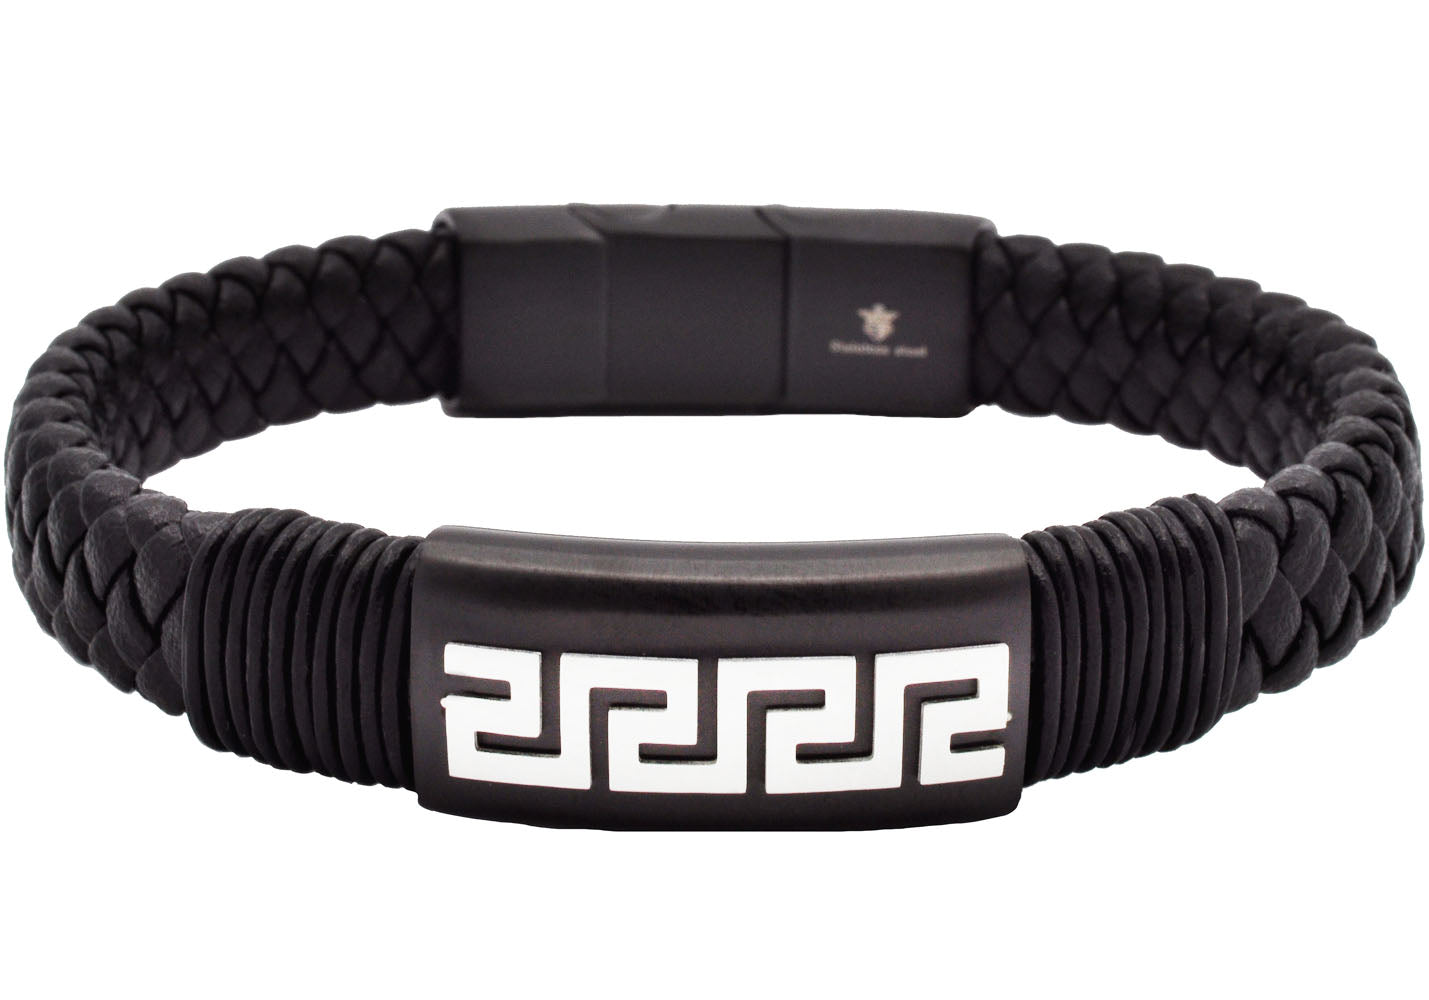 Carbon Pop Leather Bracelet In Black – Tateossian London